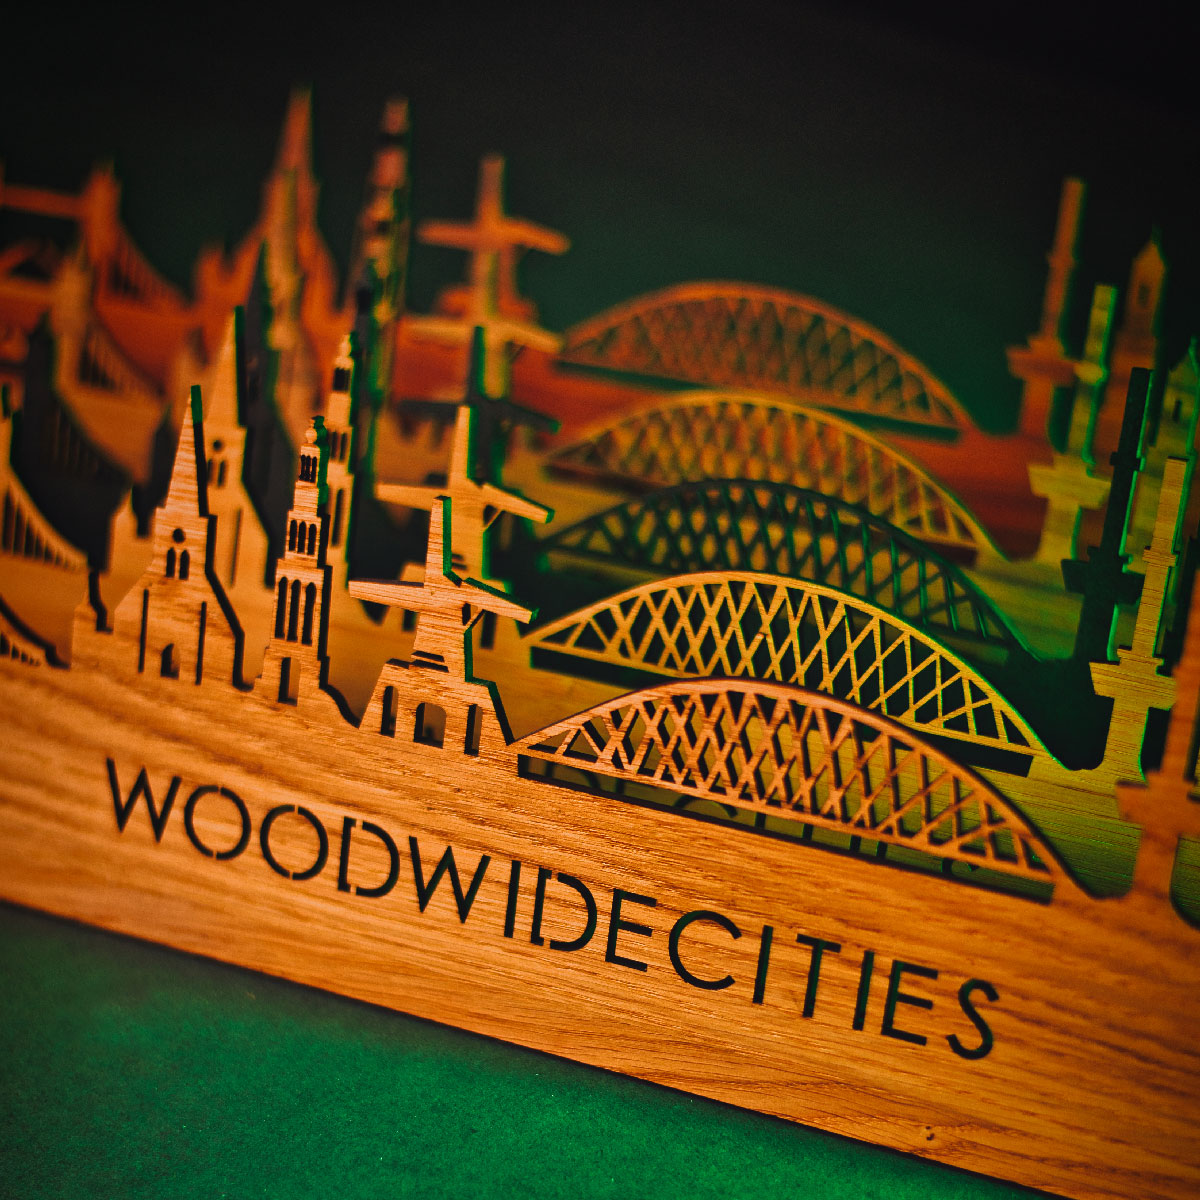 Skyline Klok Emmeloord Bamboe houten cadeau wanddecoratie relatiegeschenk van WoodWideCities